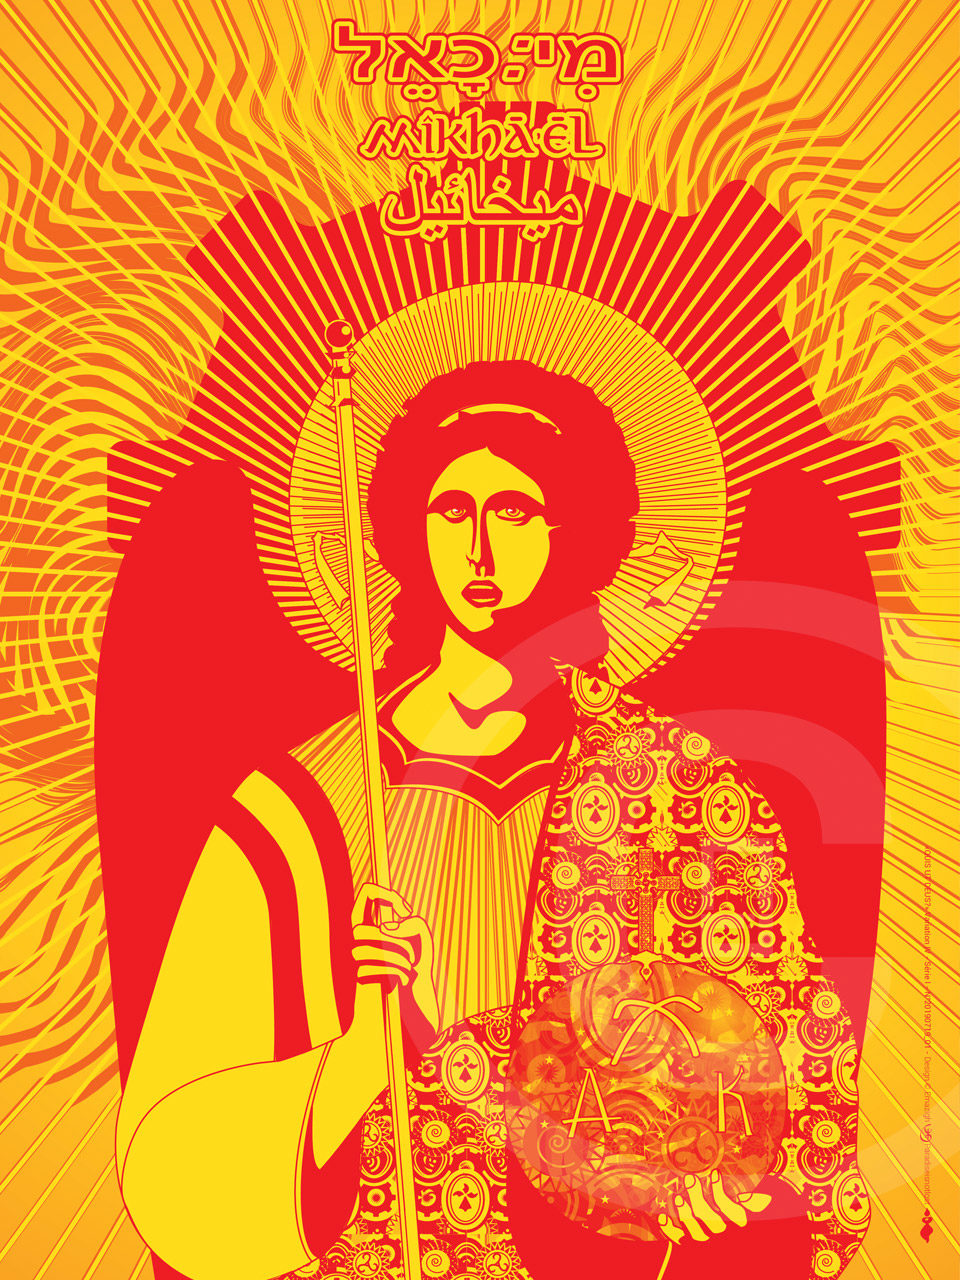 Icônographie digitale de Saint-Michel Archange Variation AR SEIZ BREUR 2019